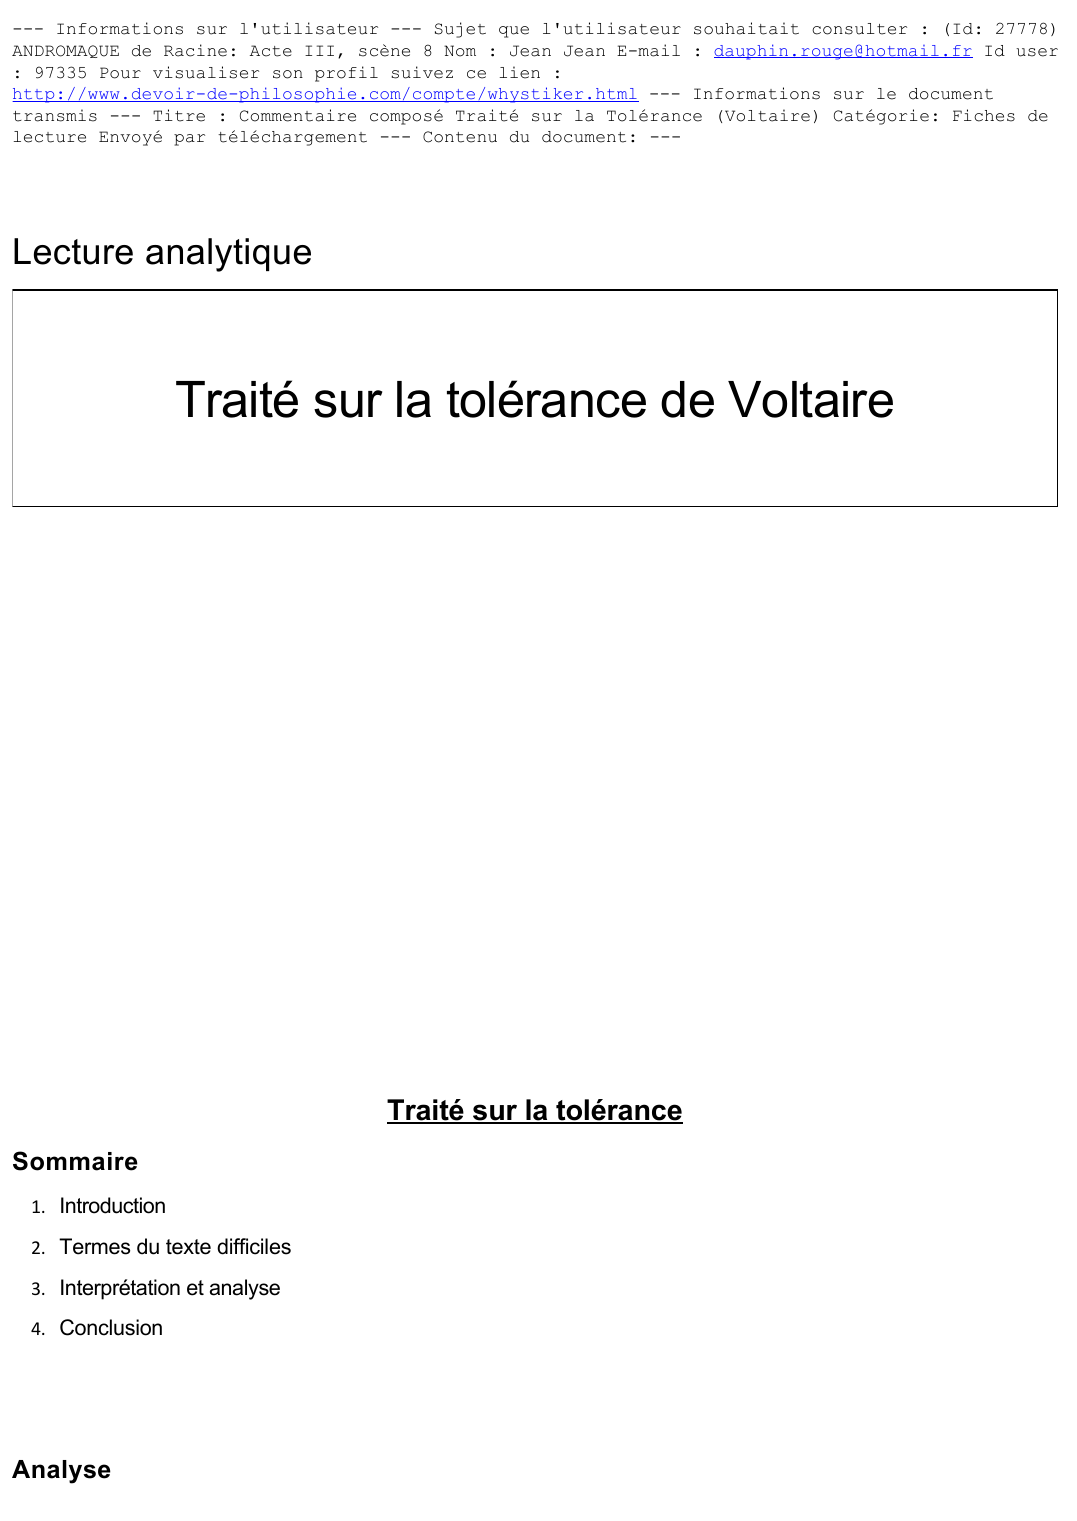 Prévisualisation du document Lecture analytique
 
Traité sur la tolérance de Voltaire